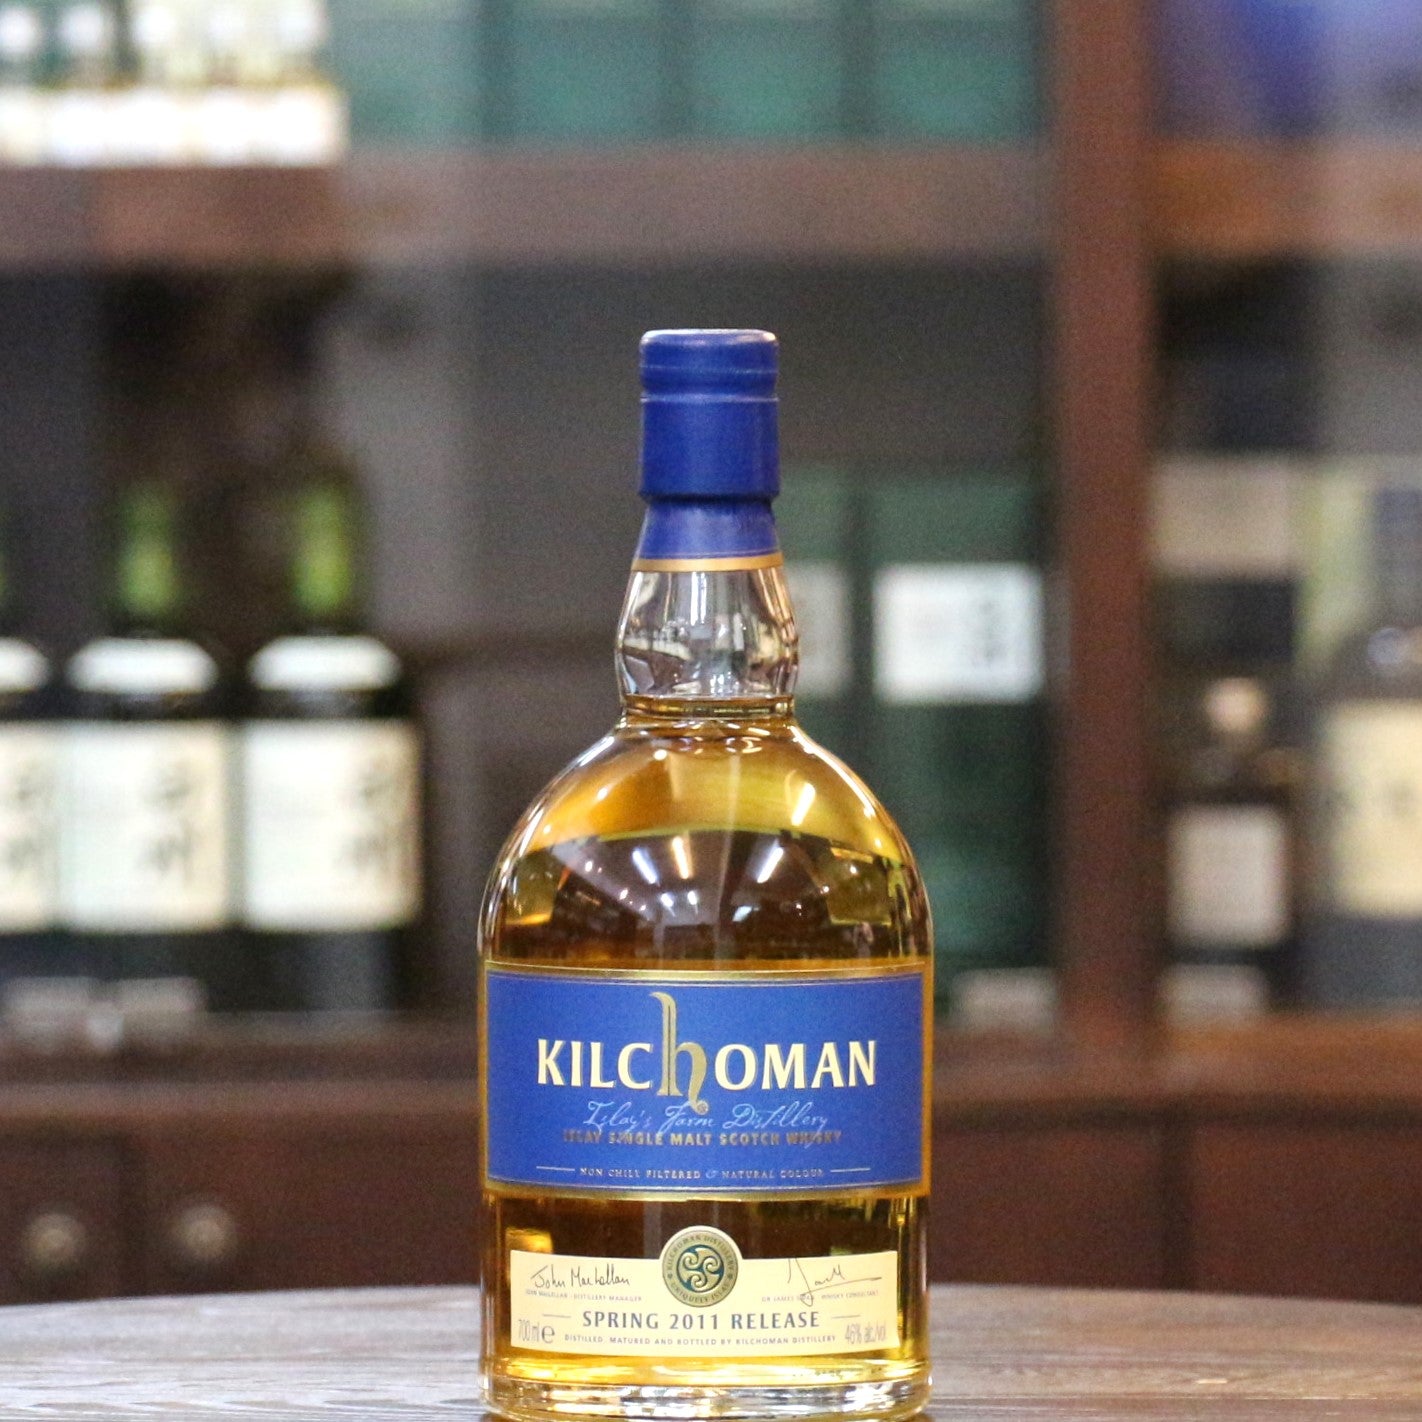 Kilchoman 2011 年春季發布艾萊島單一麥芽蘇格蘭威士忌